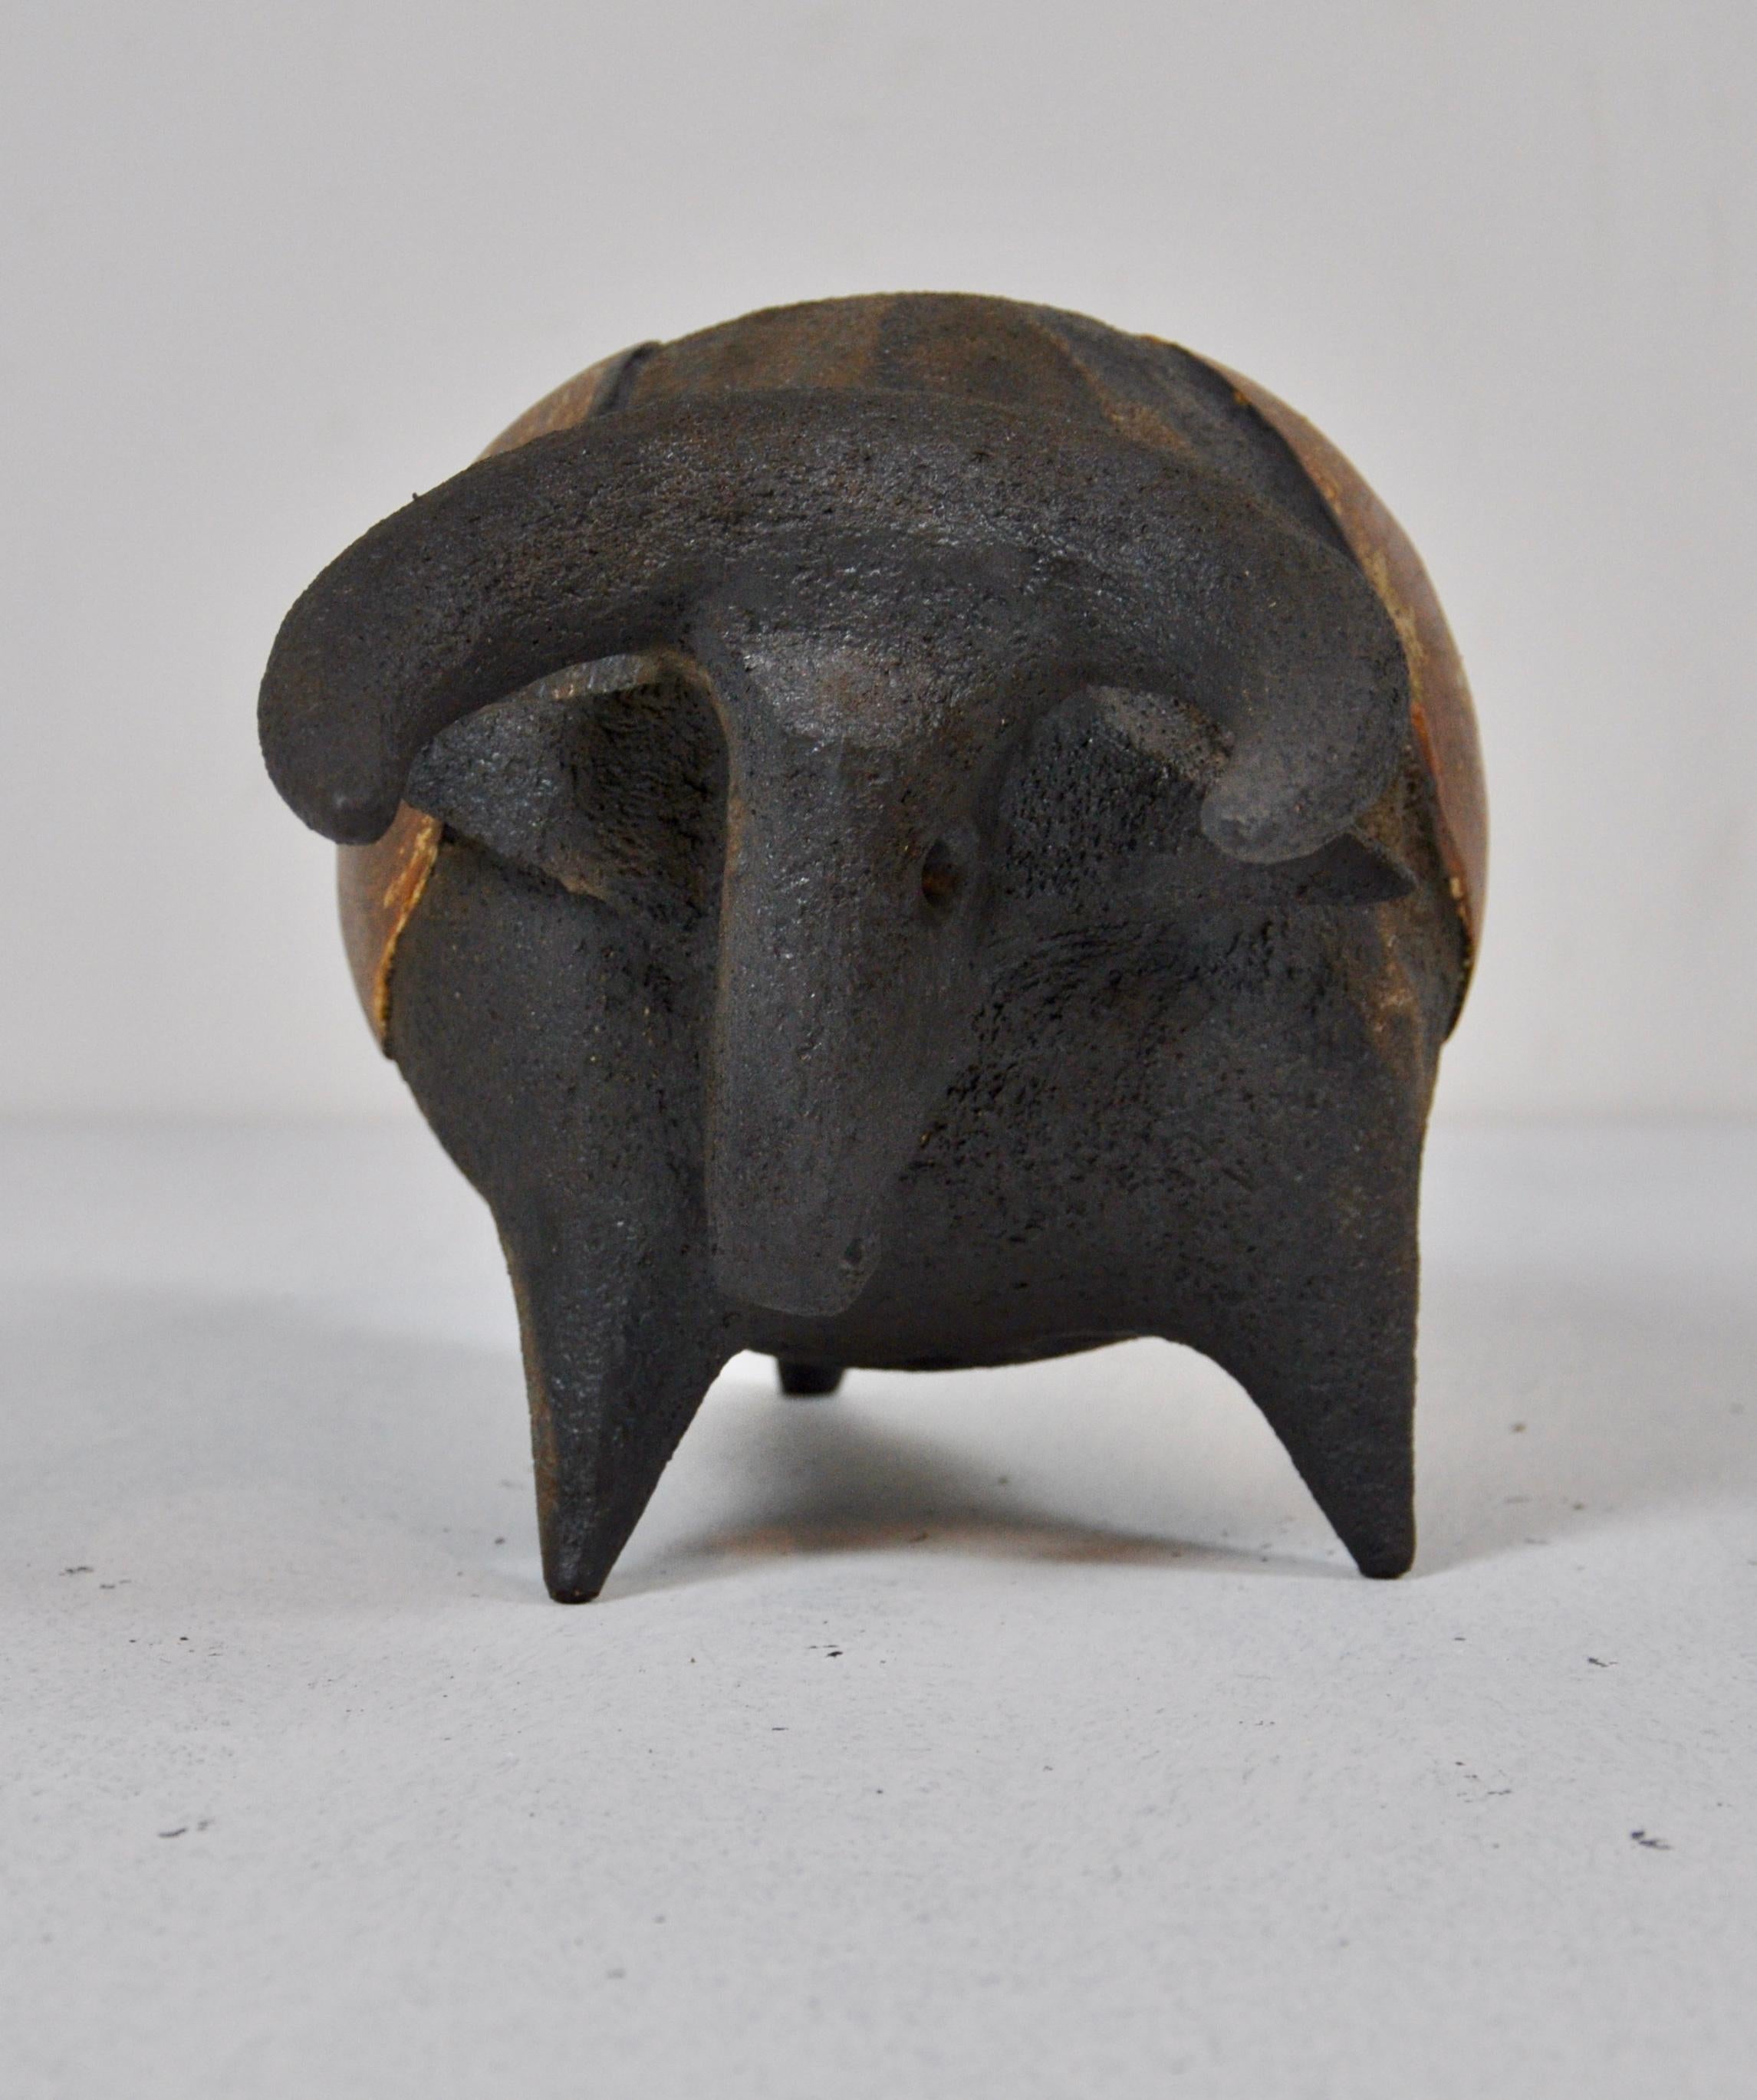 Contemporary Ceramic Bull by Dominique Pouchain, 2000s